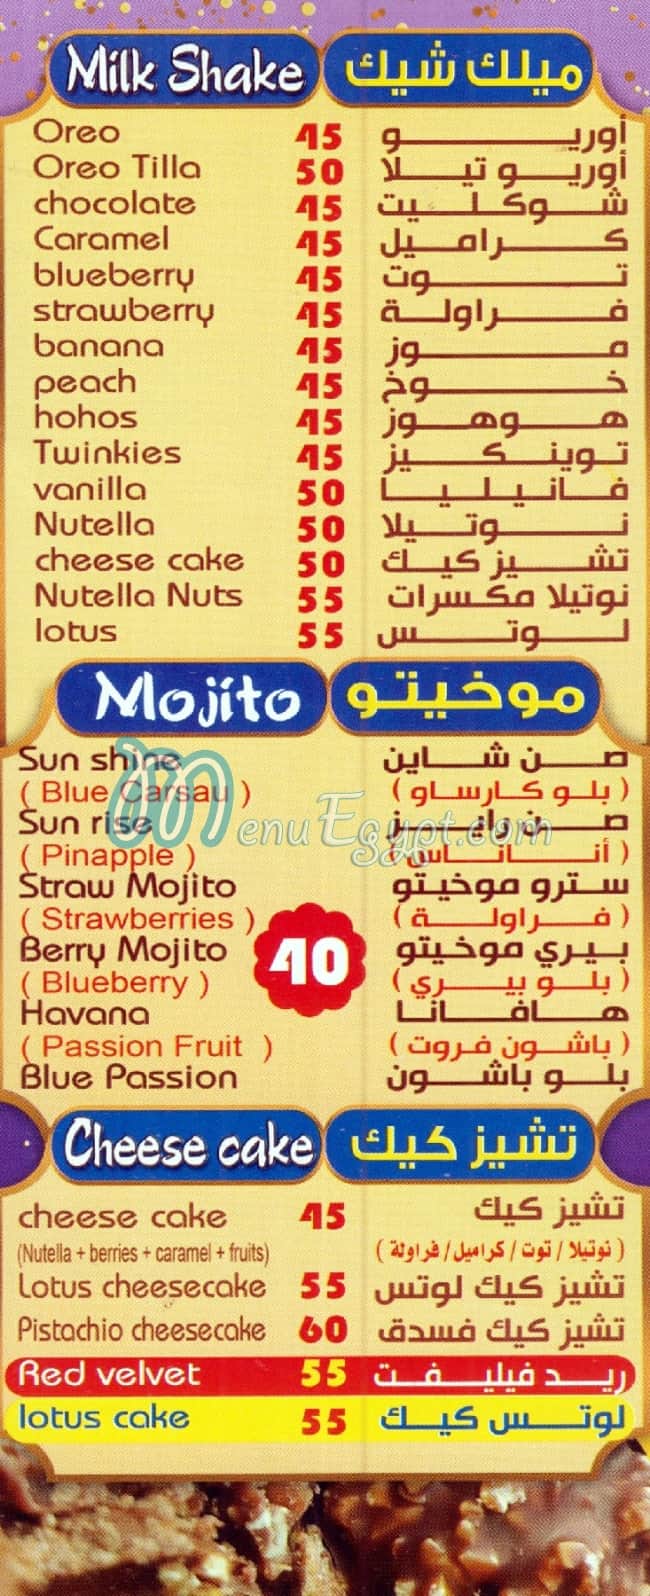 Choco Roll egypt